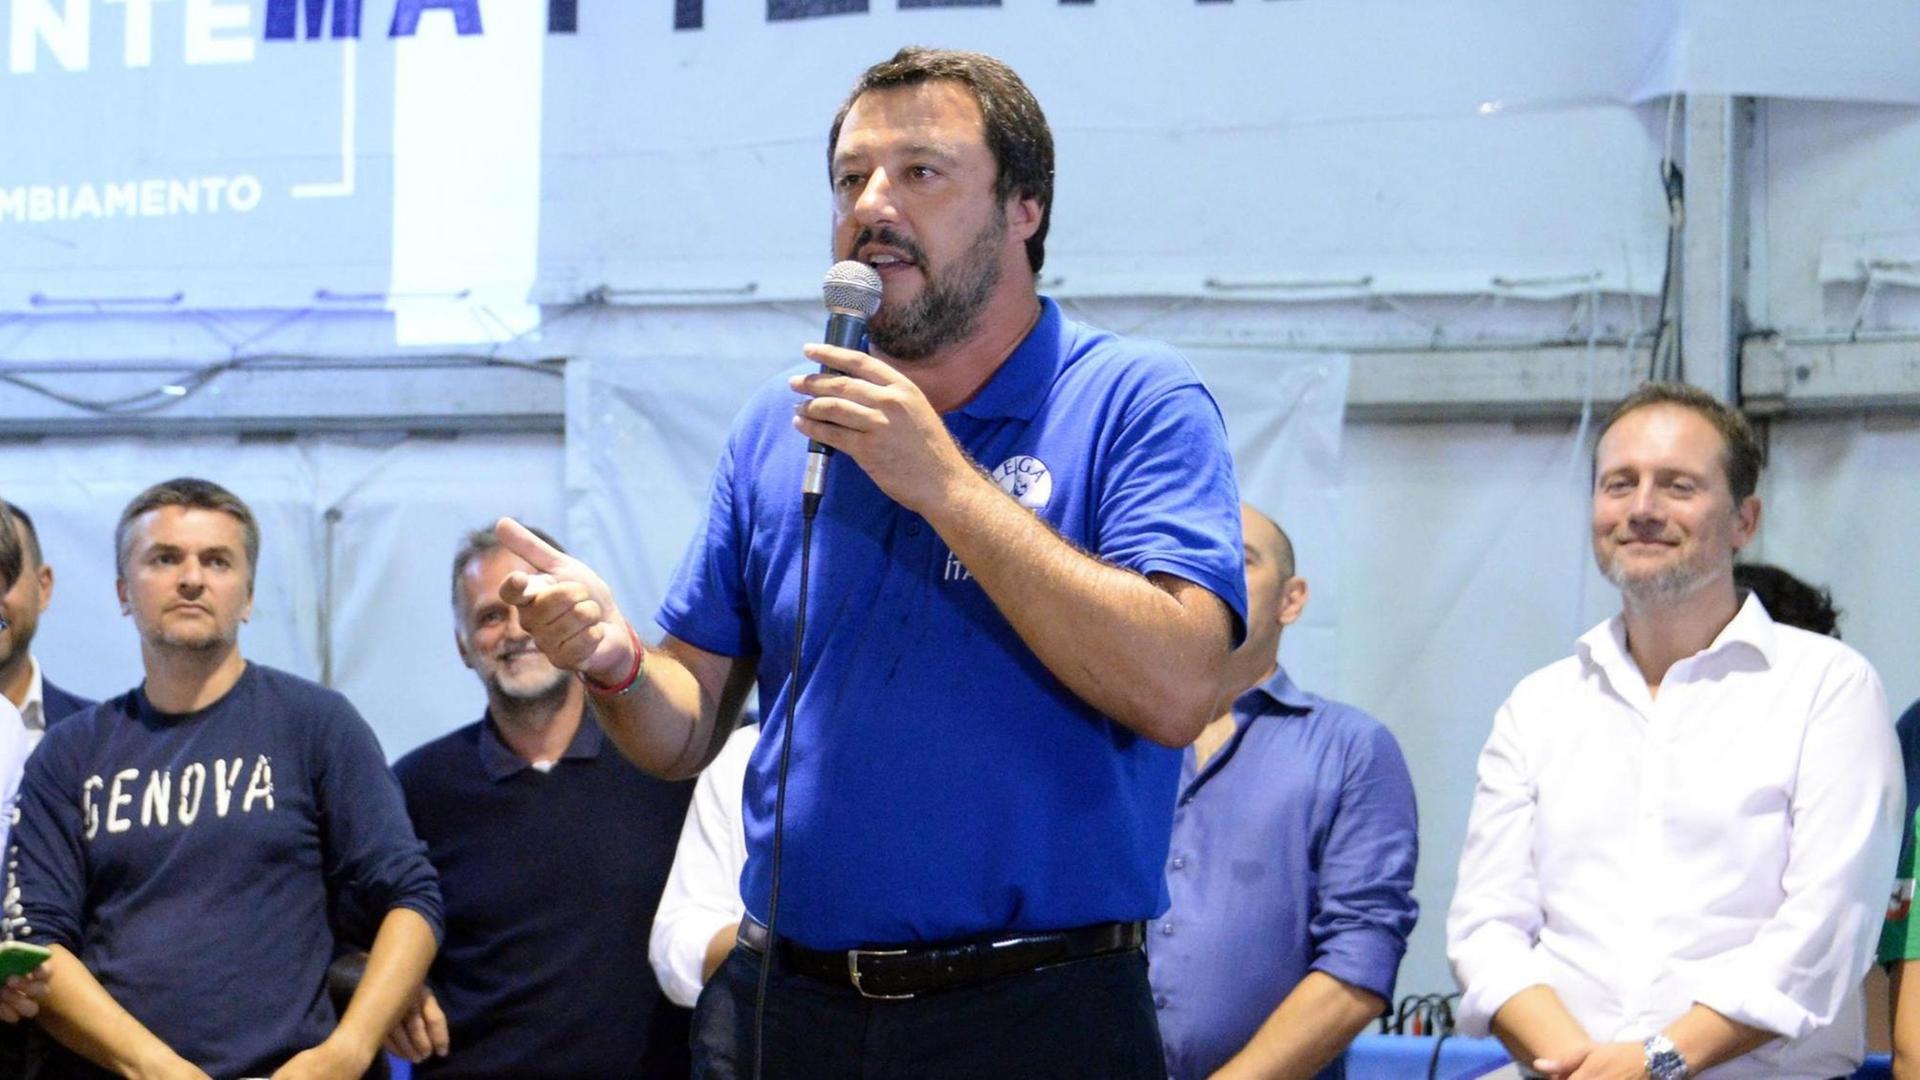 Matteo Salvini mit Mikrofon in der Hand auf einer Versammlung